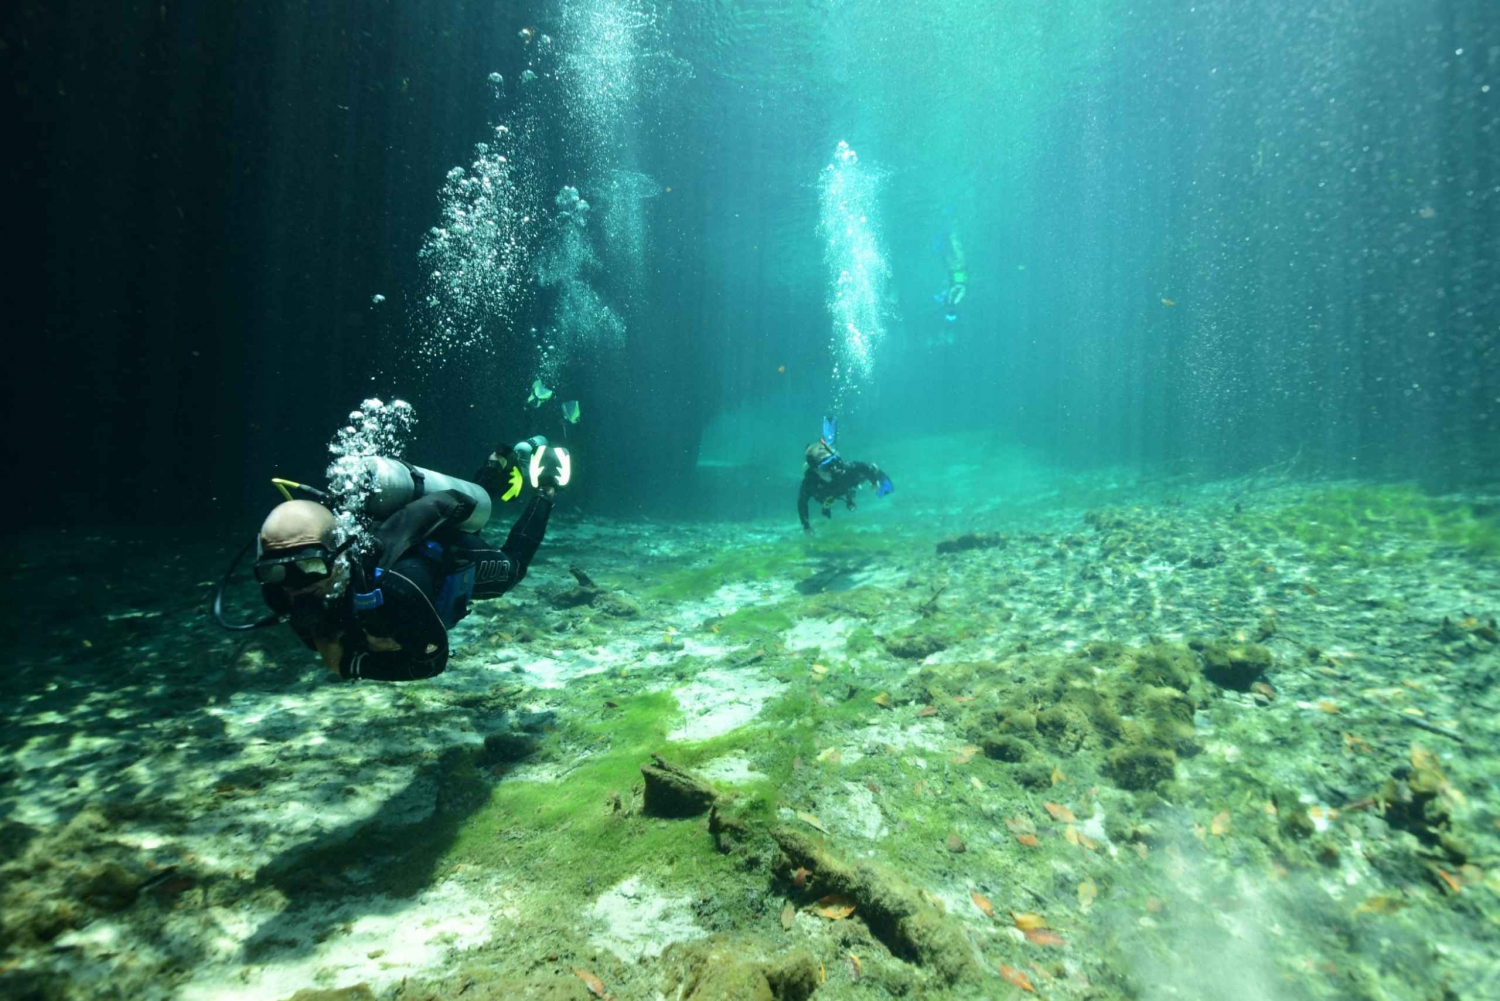 Tulum: Scuba Diving in Cenotes